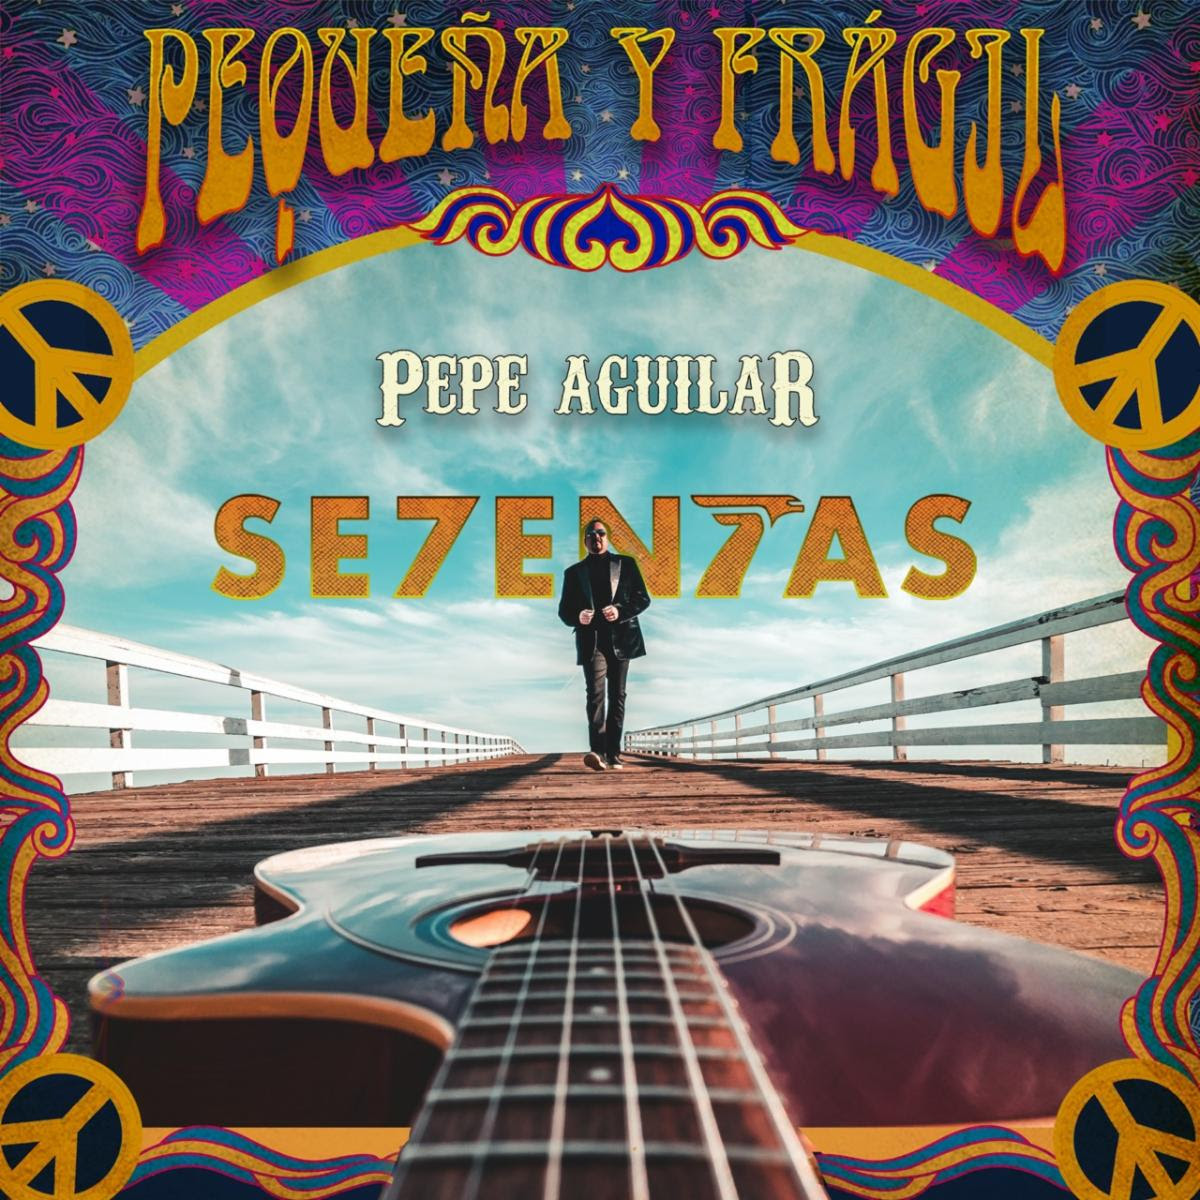 Pepe Aguilar lanza su nuevo tema “Pequeña y frágil”